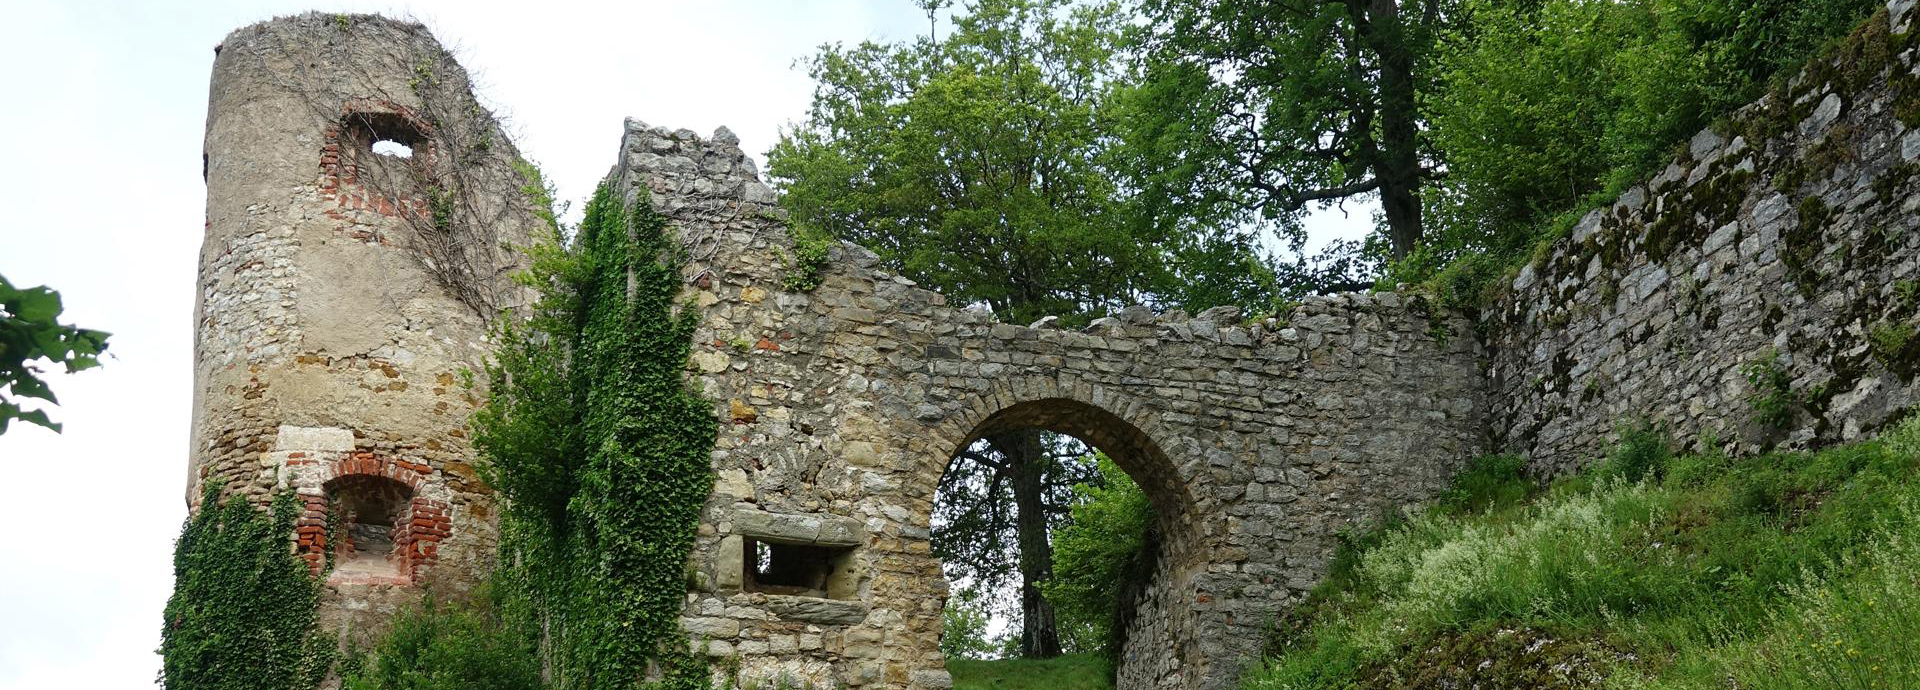 Château de Ferrette en Alsace, un cadre historique privilégié